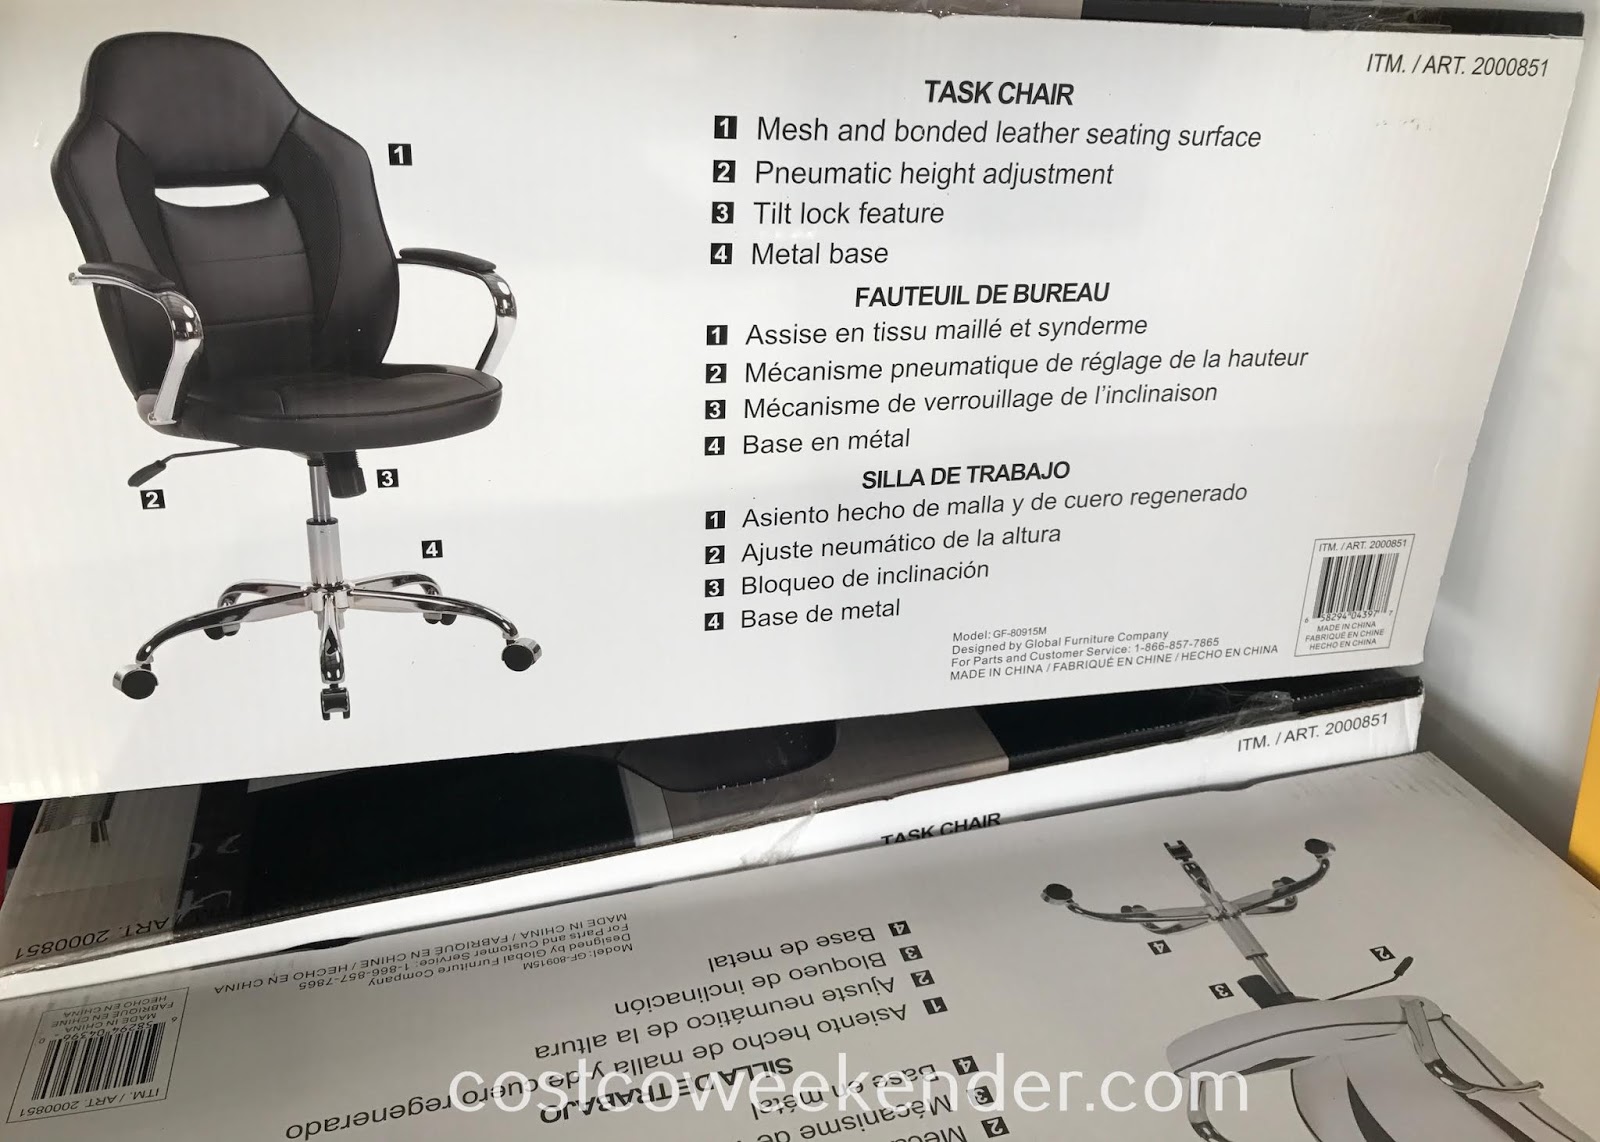 Global Furniture Task Chair Costco Weekender